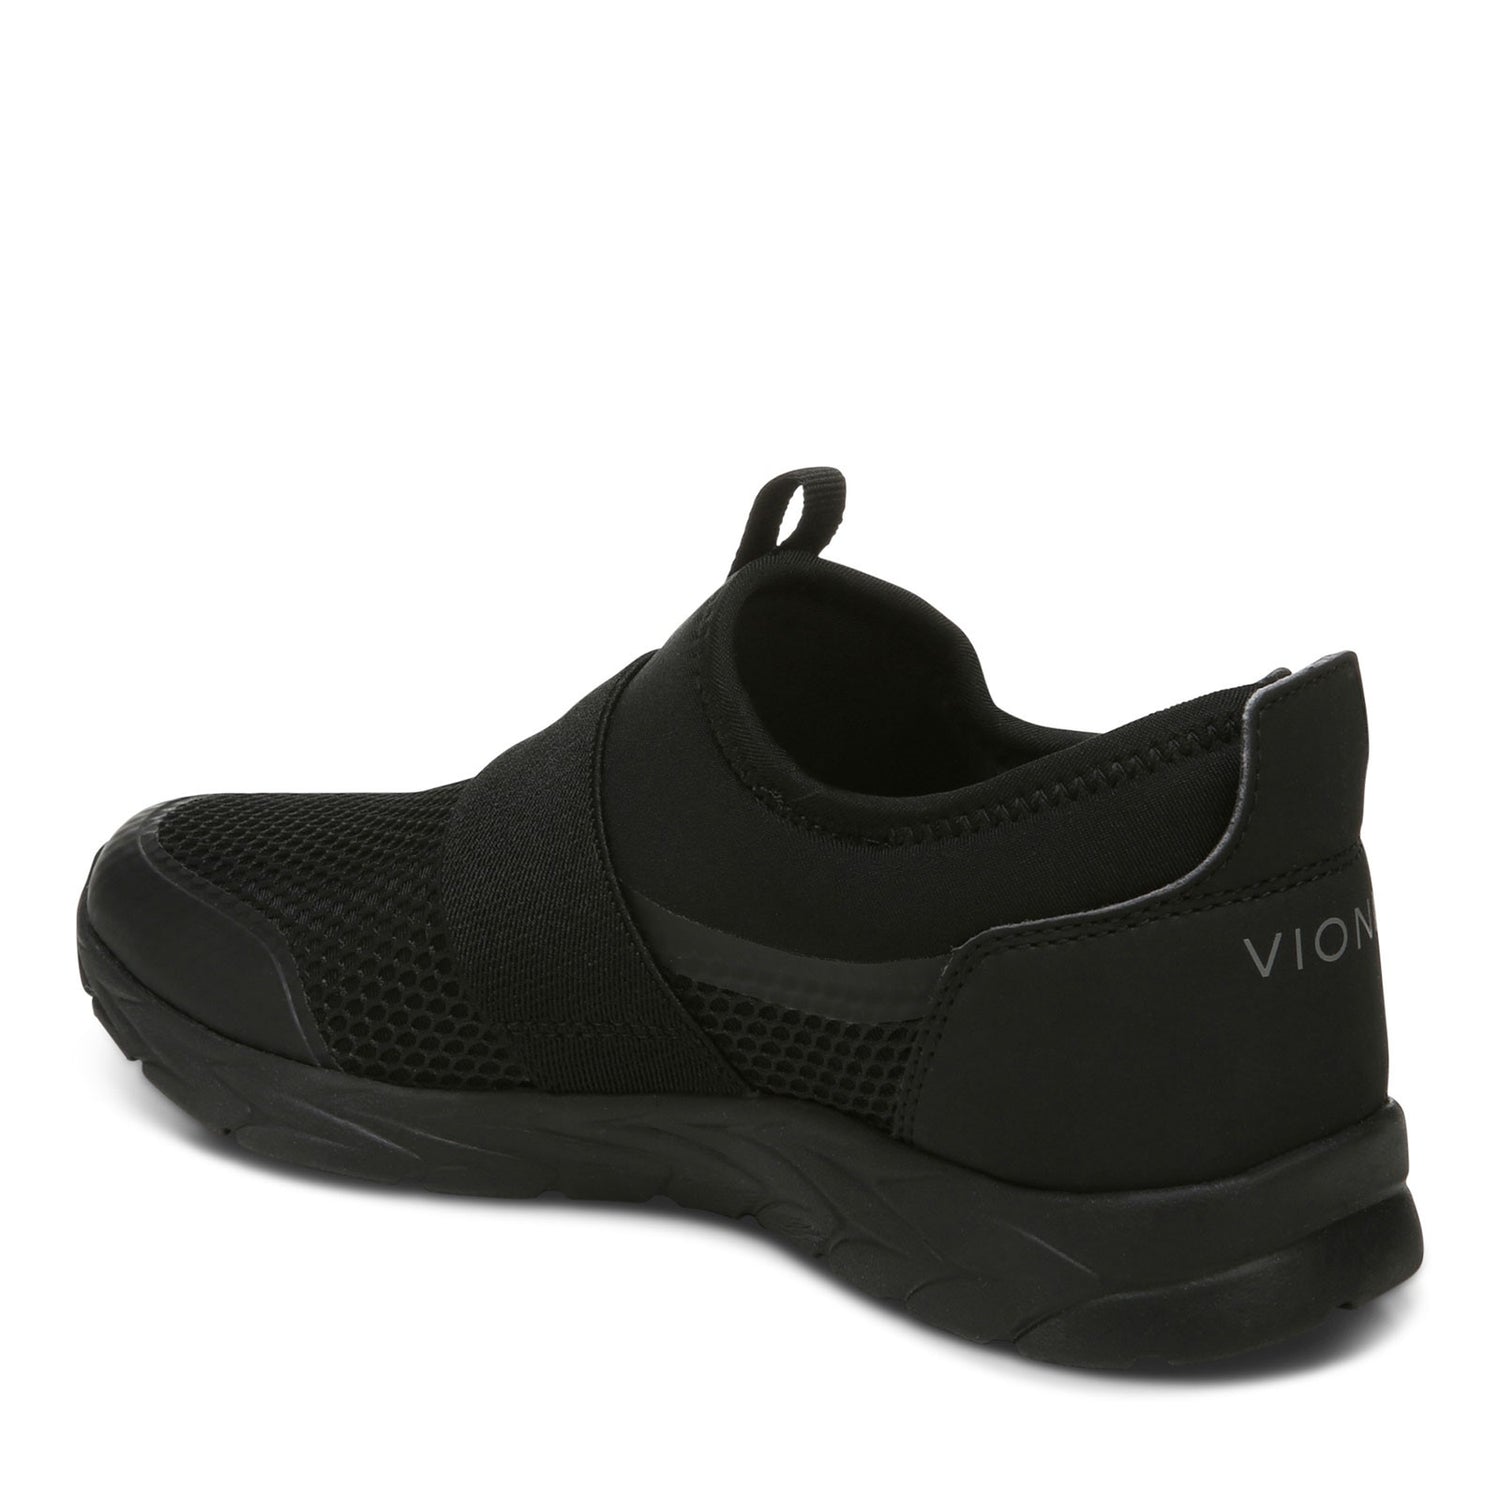 Peltz Shoes  Women's Vionic Camrie Sneaker SOLID BLACK H8211M1002